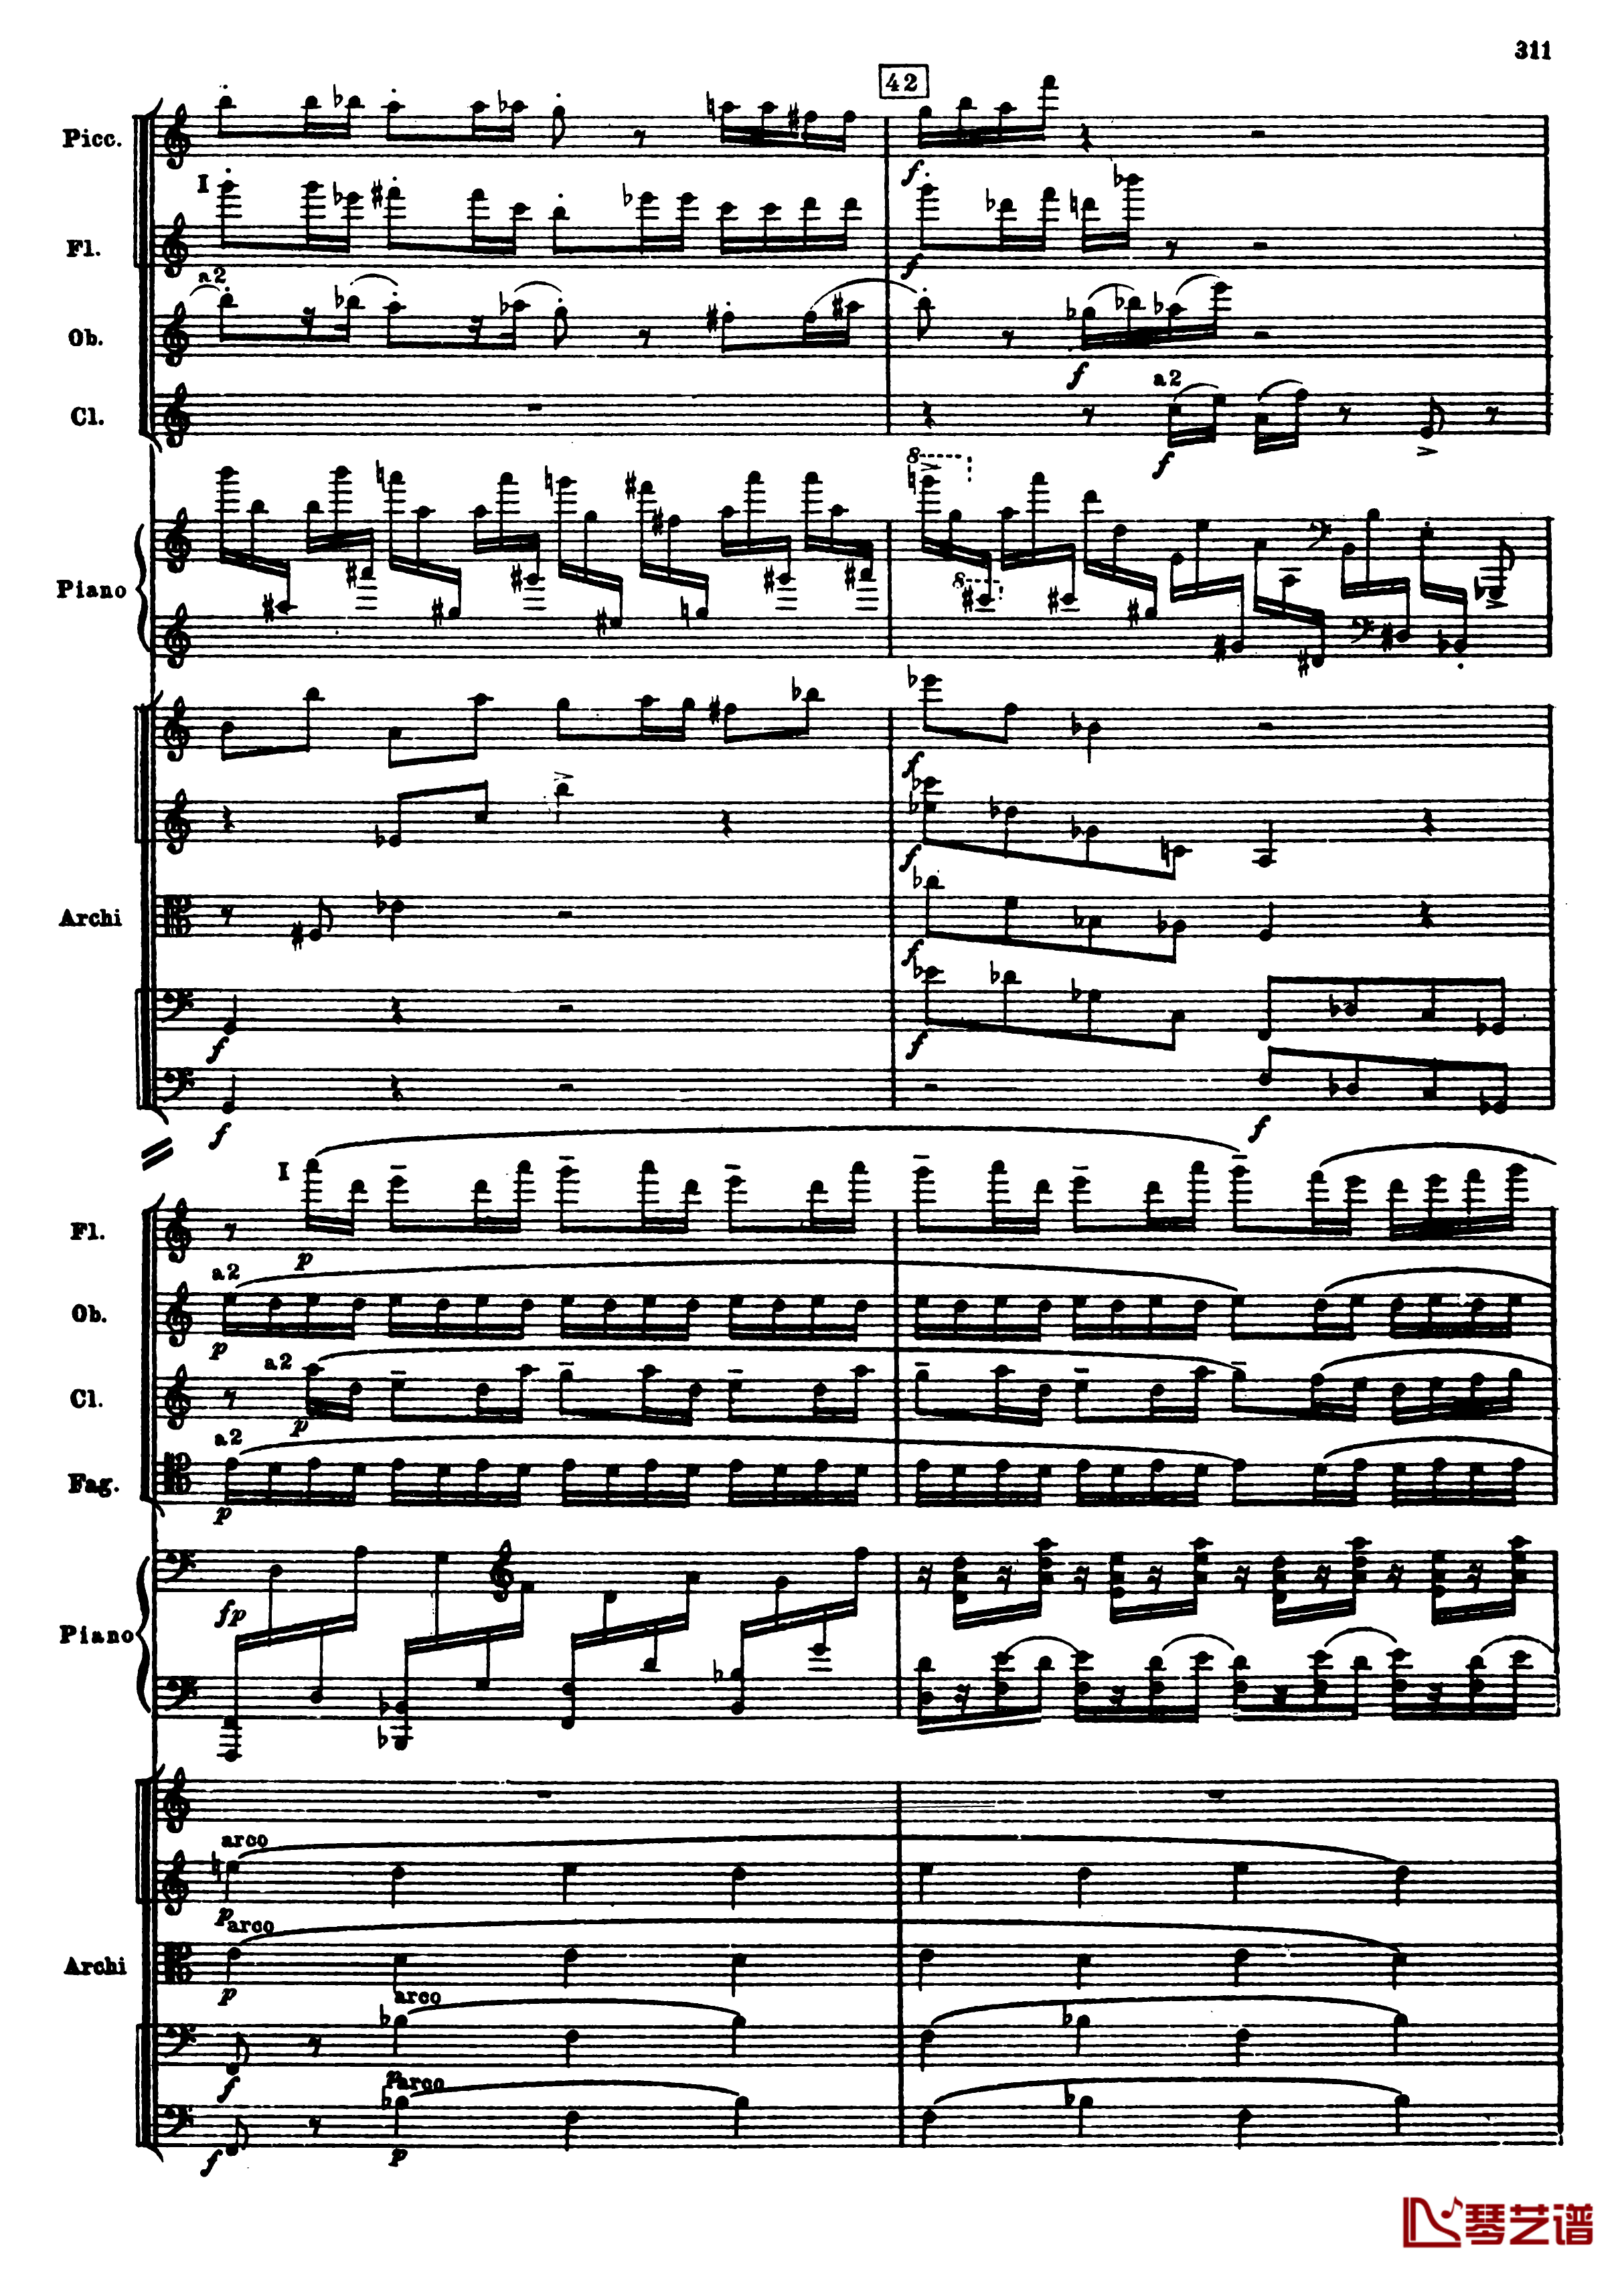 普罗科菲耶夫第三钢琴协奏曲钢琴谱-总谱-普罗科非耶夫43